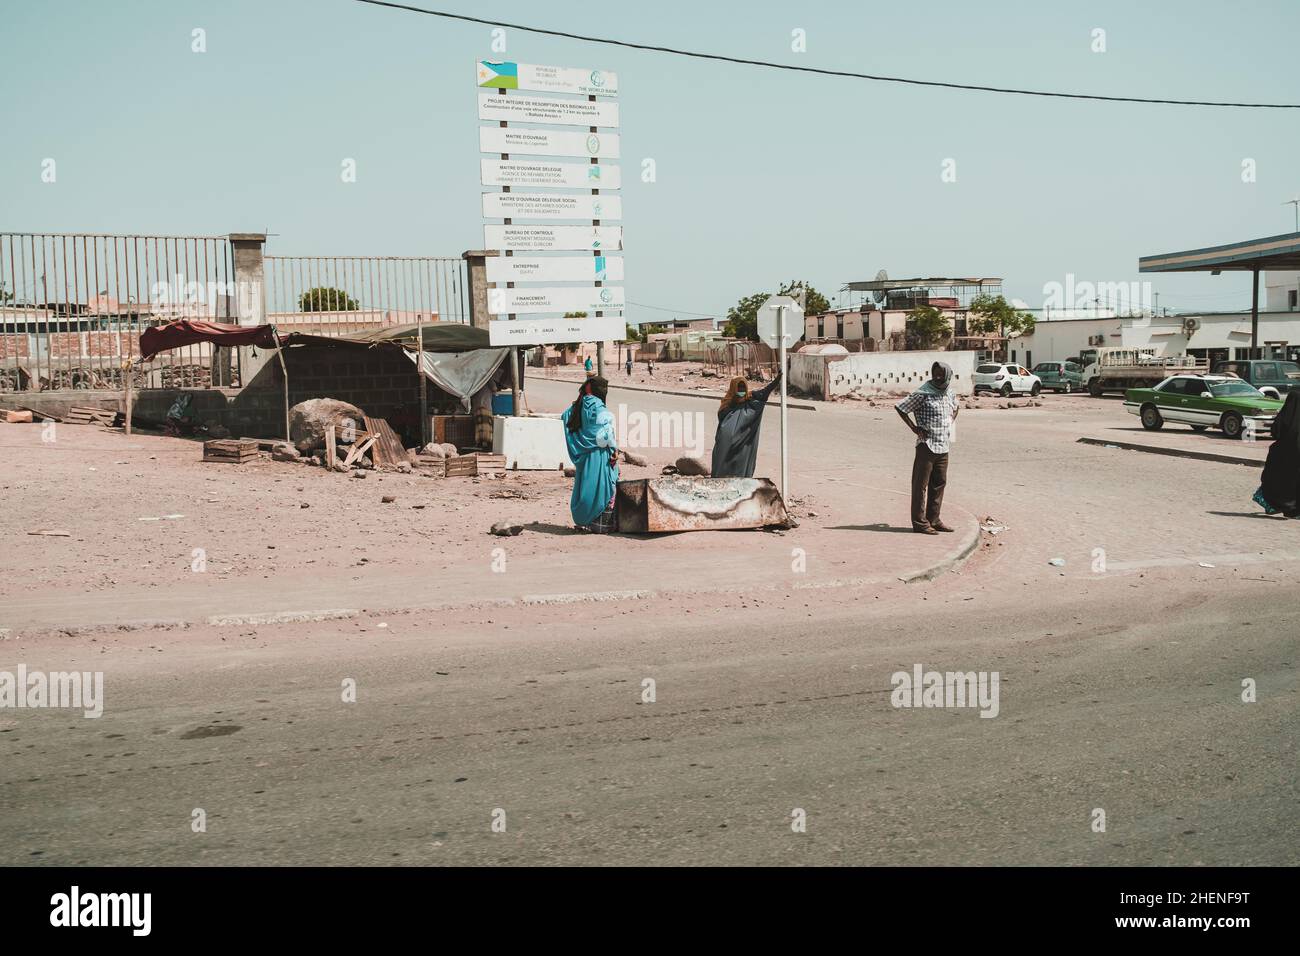 Djibouti, Djibouti - 21 mai 2021 : un homme djiboutien et deux femmes djiboutiennes en robe locale attendant près de la rue à Djibouti.Photo éditoriale à Djibo Banque D'Images